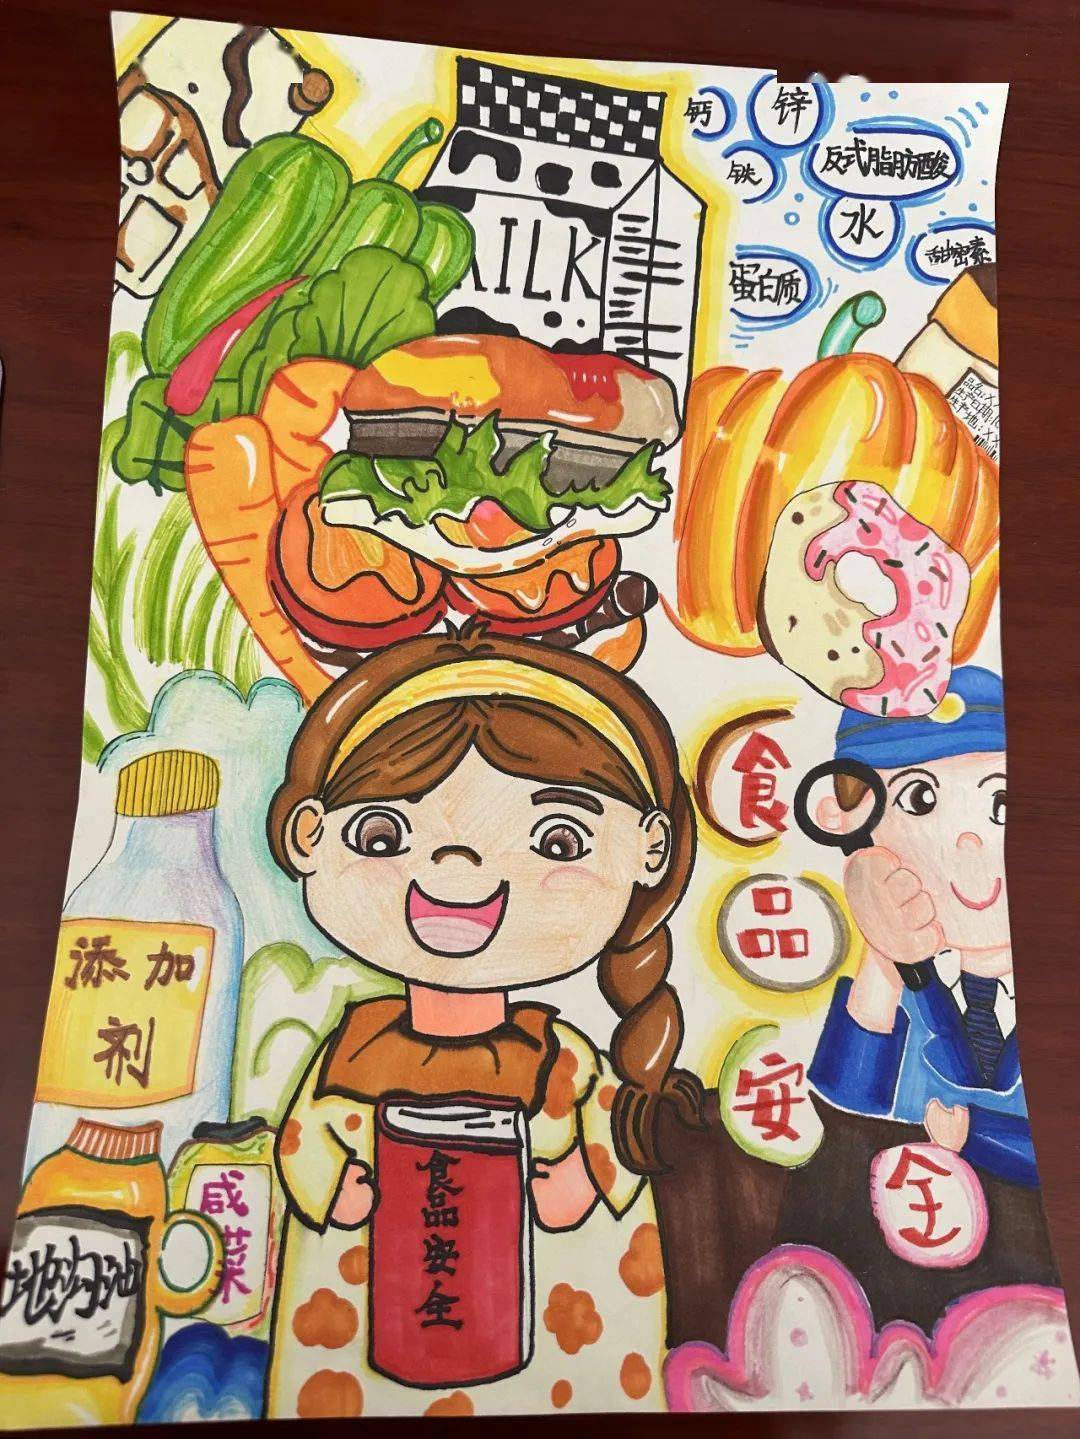 黄山区中小学生校园食品安全主题绘画比赛结果通报